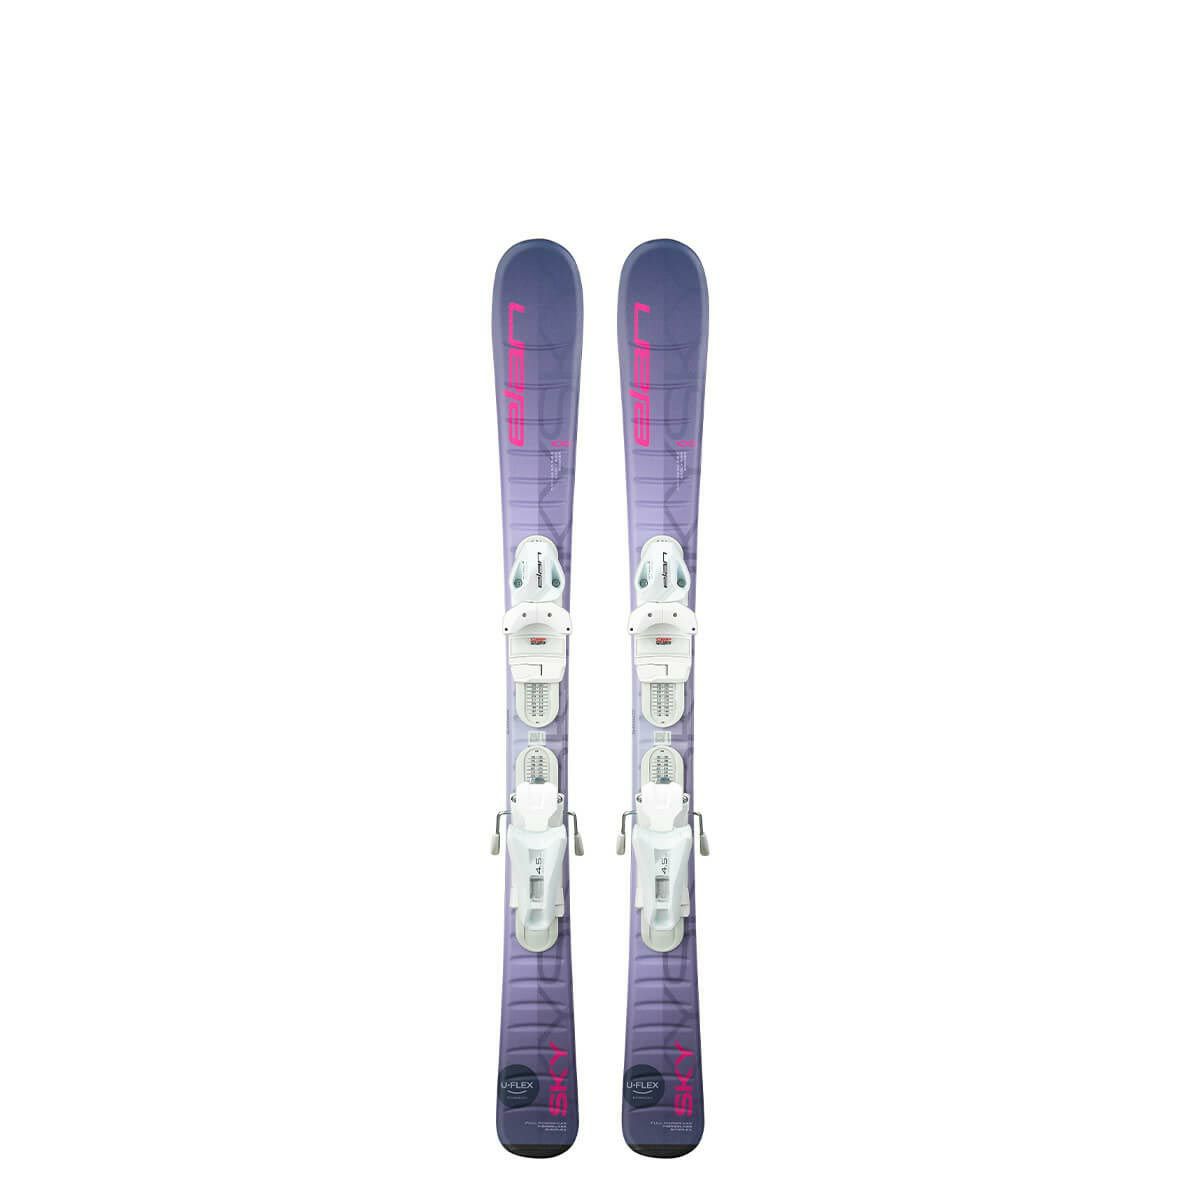 スキー板 VOLKL ジュニア 130cm - スキー